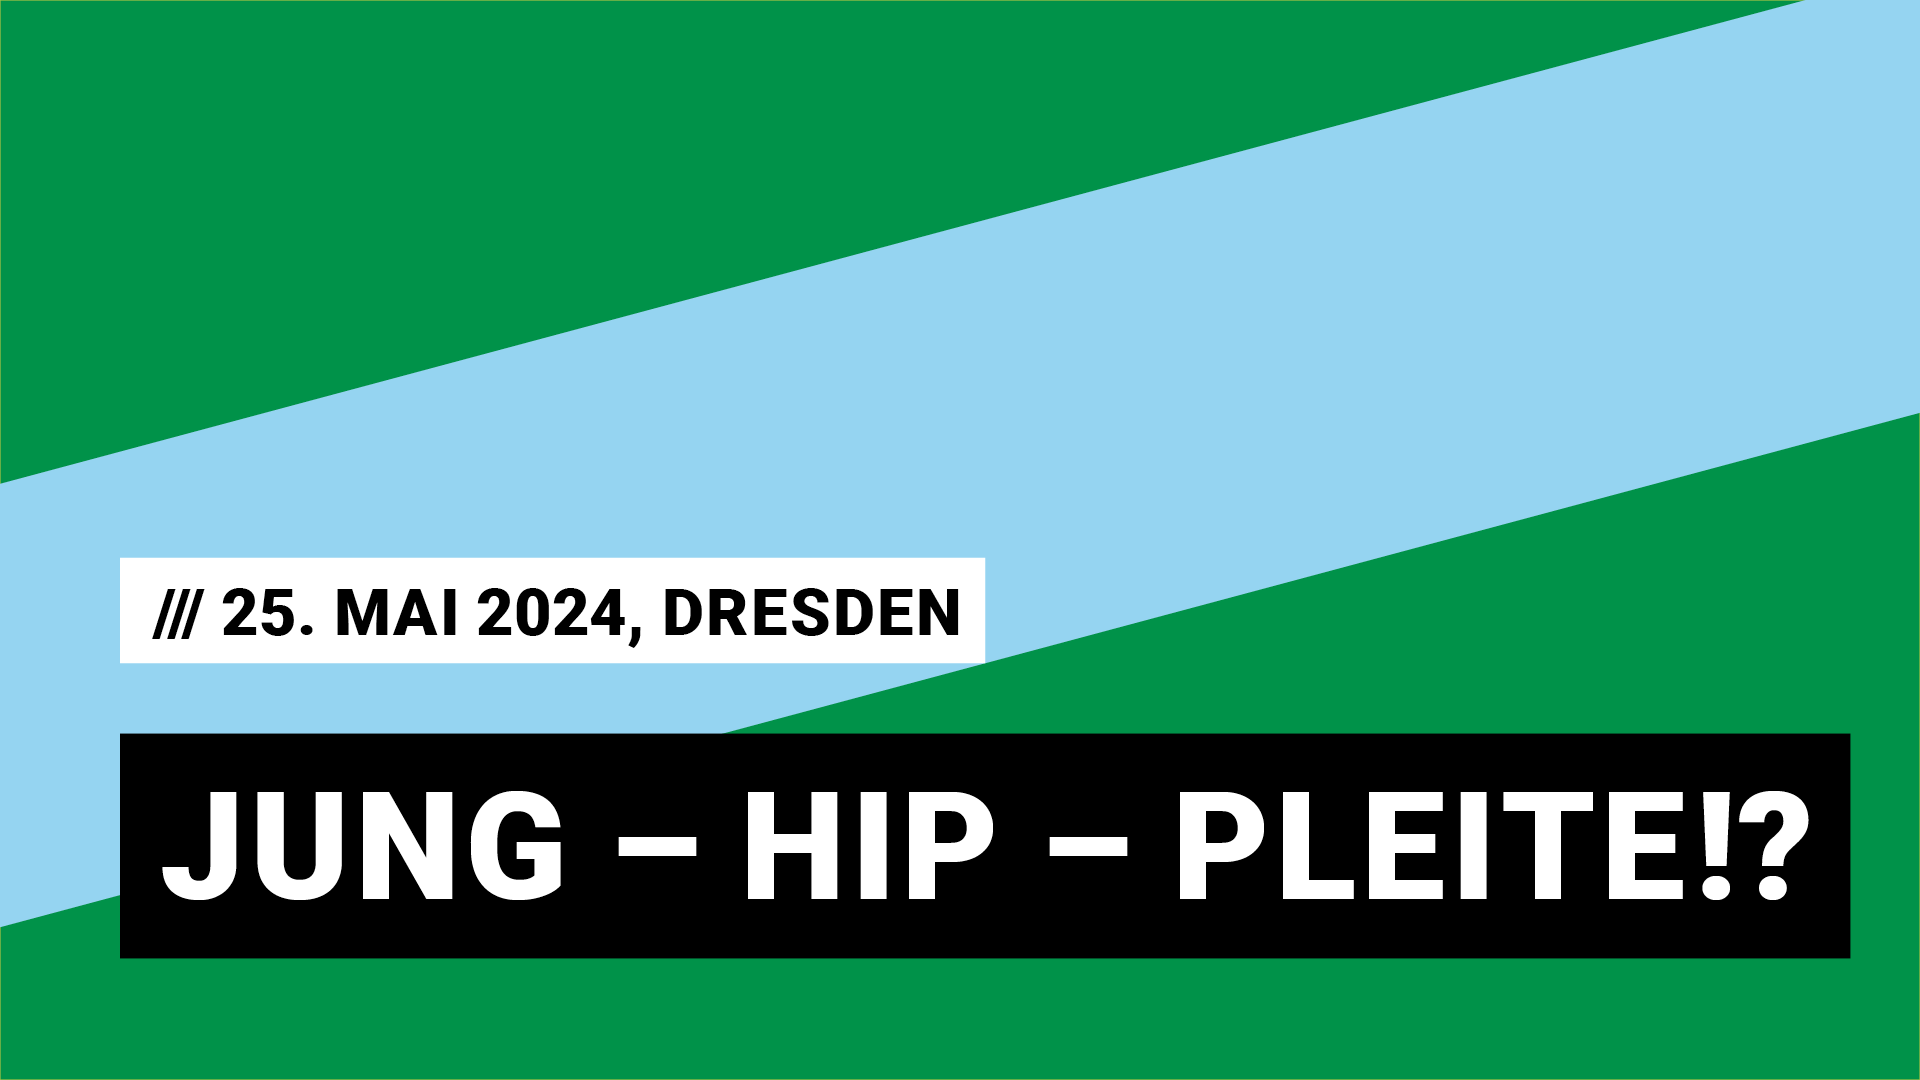 Titelbild Veranstaltung Panel Jung Hip Pleite mit Datum 25. Mai 2024 in Dresden